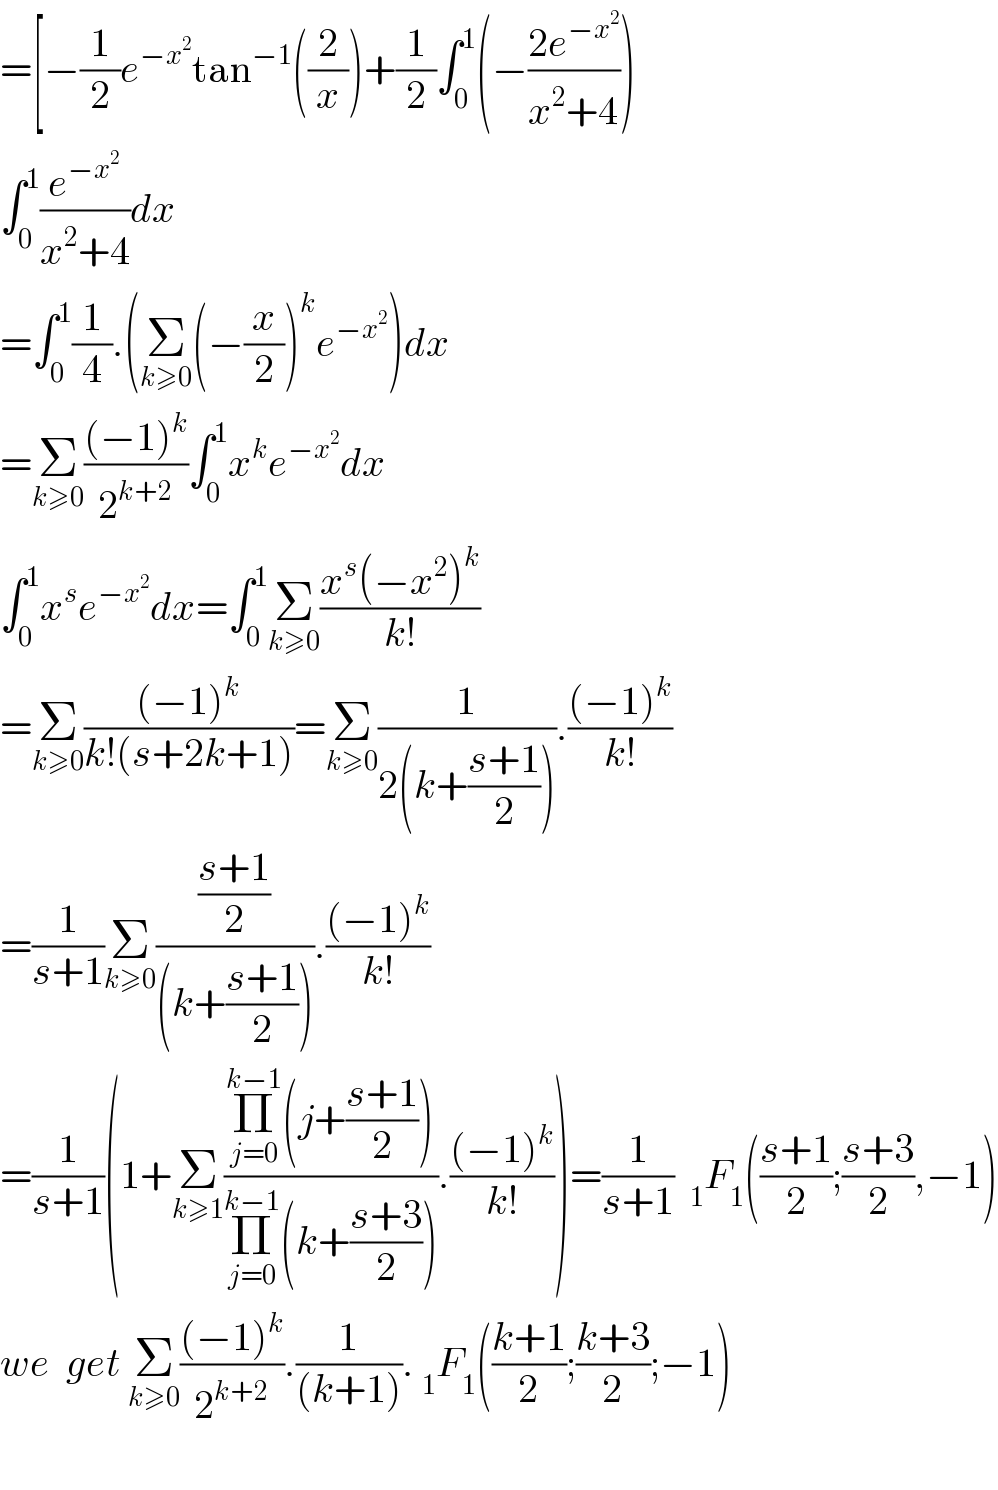 =[−(1/2)e^(−x^2 ) tan^(−1) ((2/x))+(1/2)∫_0 ^1 (−((2e^(−x^2 ) )/(x^2 +4)))  ∫_0 ^1 (e^(−x^2 ) /(x^2 +4))dx  =∫_0 ^1 (1/4).(Σ_(k≥0) (−(x/2))^k e^(−x^2 ) )dx  =Σ_(k≥0) (((−1)^k )/2^(k+2) )∫_0 ^1 x^k e^(−x^2 ) dx  ∫_0 ^1 x^s e^(−x^2 ) dx=∫_0 ^1 Σ_(k≥0) ((x^s (−x^2 )^k )/(k!))  =Σ_(k≥0) (((−1)^k )/(k!(s+2k+1)))=Σ_(k≥0) (1/(2(k+((s+1)/2)))).(((−1)^k )/(k!))  =(1/(s+1))Σ_(k≥0) (((s+1)/2)/((k+((s+1)/2)))).(((−1)^k )/(k!))  =(1/(s+1))(1+Σ_(k≥1) ((Π_(j=0) ^(k−1) (j+((s+1)/2)))/(Π_(j=0) ^(k−1) (k+((s+3)/2)))).(((−1)^k )/(k!)))=(1/(s+1))  _1 F_1 (((s+1)/2);((s+3)/2),−1)  we  get Σ_(k≥0) (((−1)^k )/2^(k+2) ).(1/((k+1))). _1 F_1 (((k+1)/2);((k+3)/2);−1)    